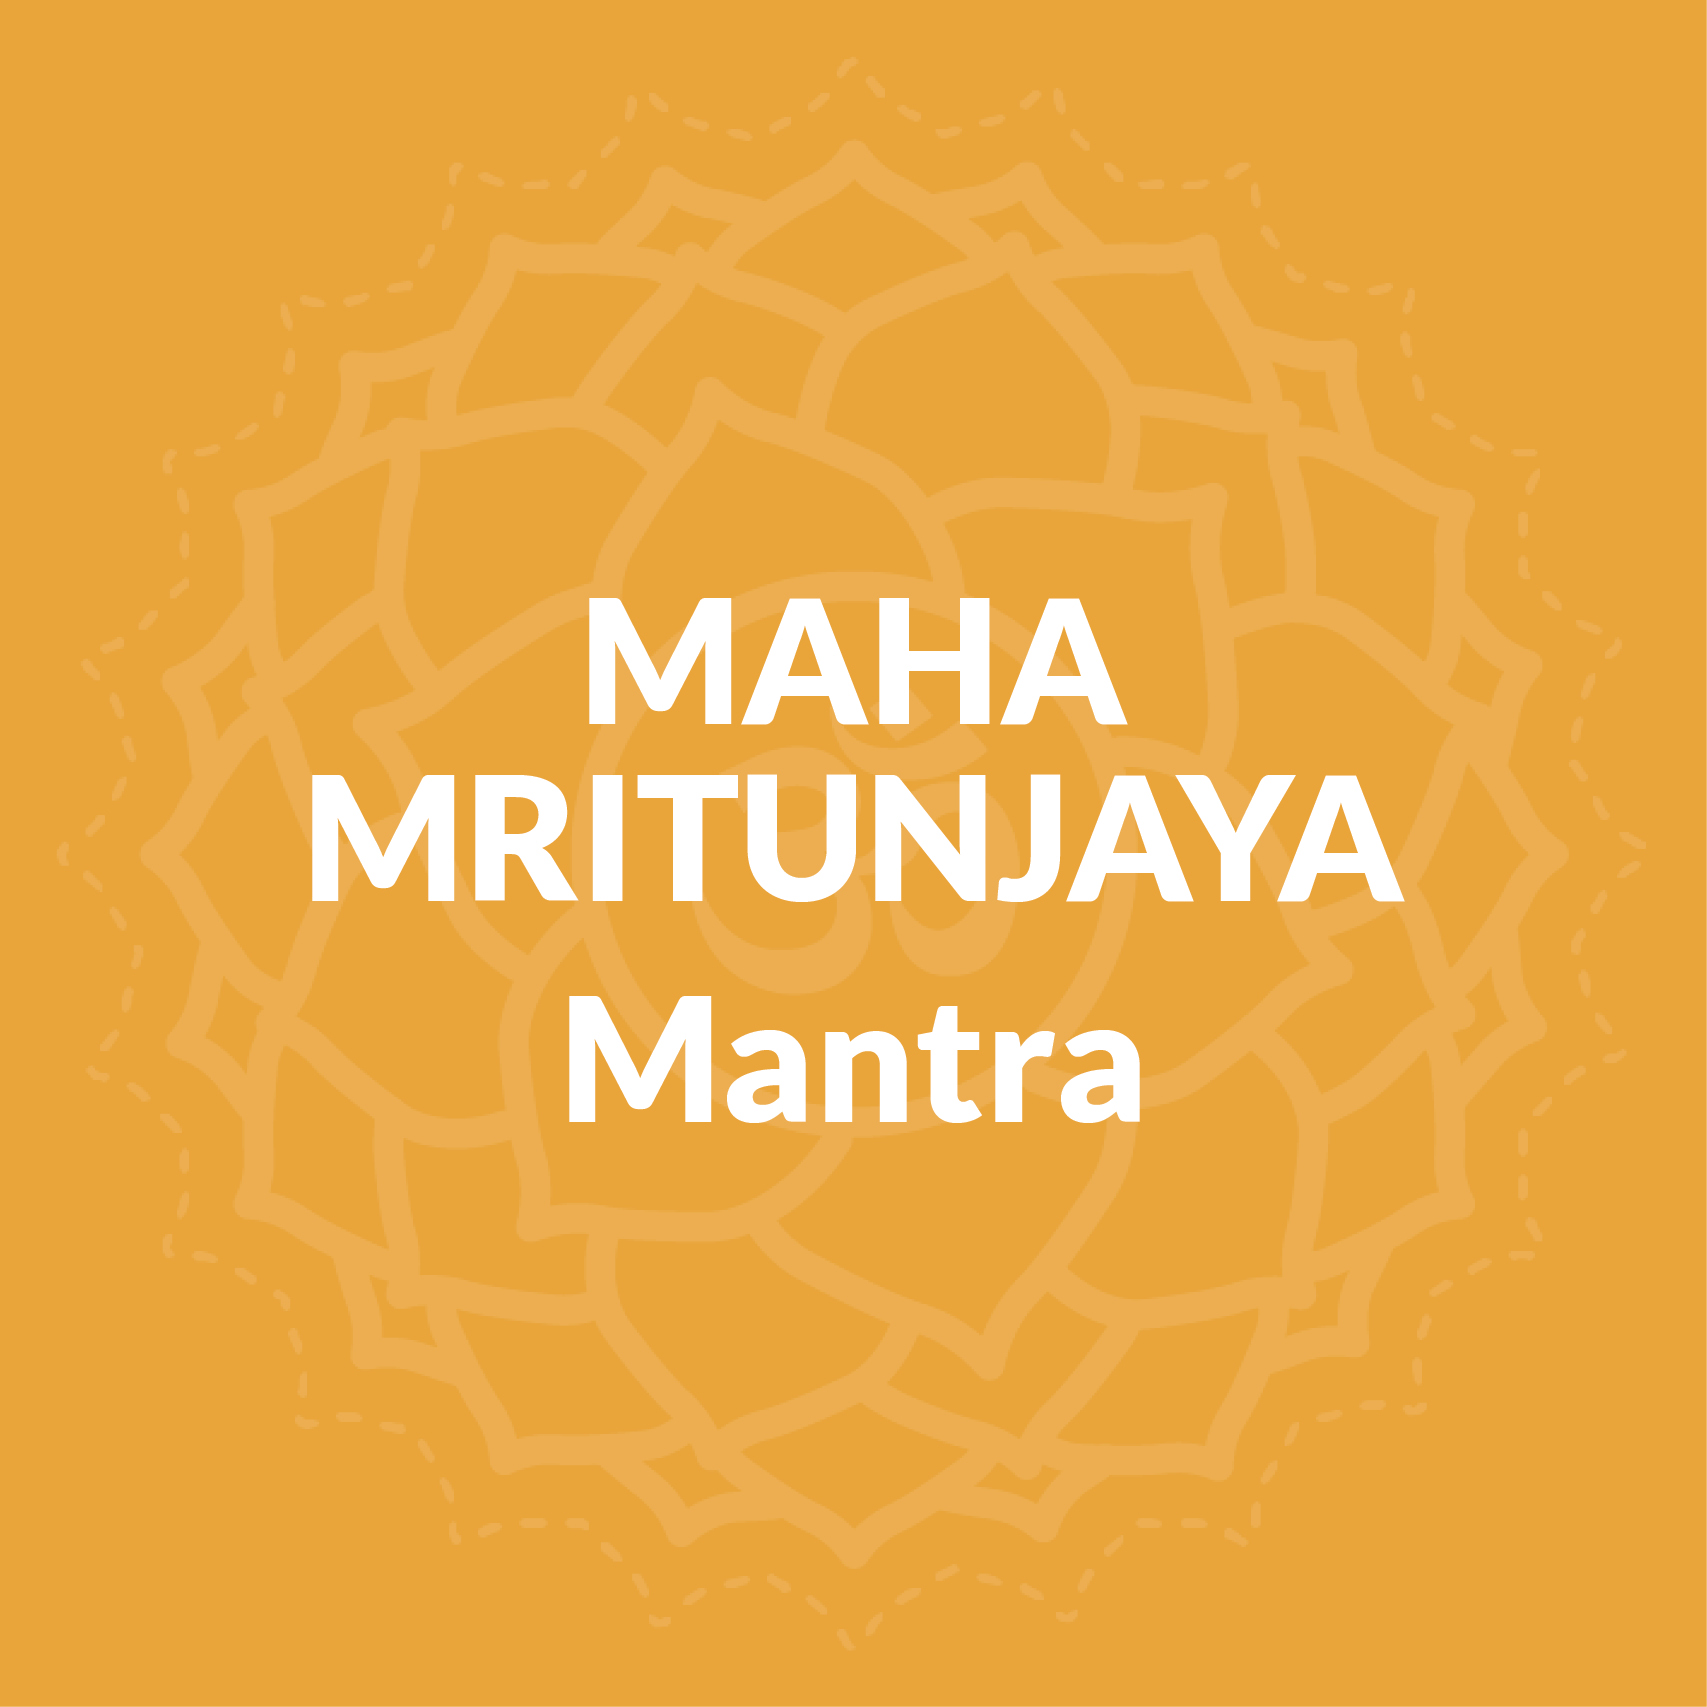 Maha Mritunjaya Mantra